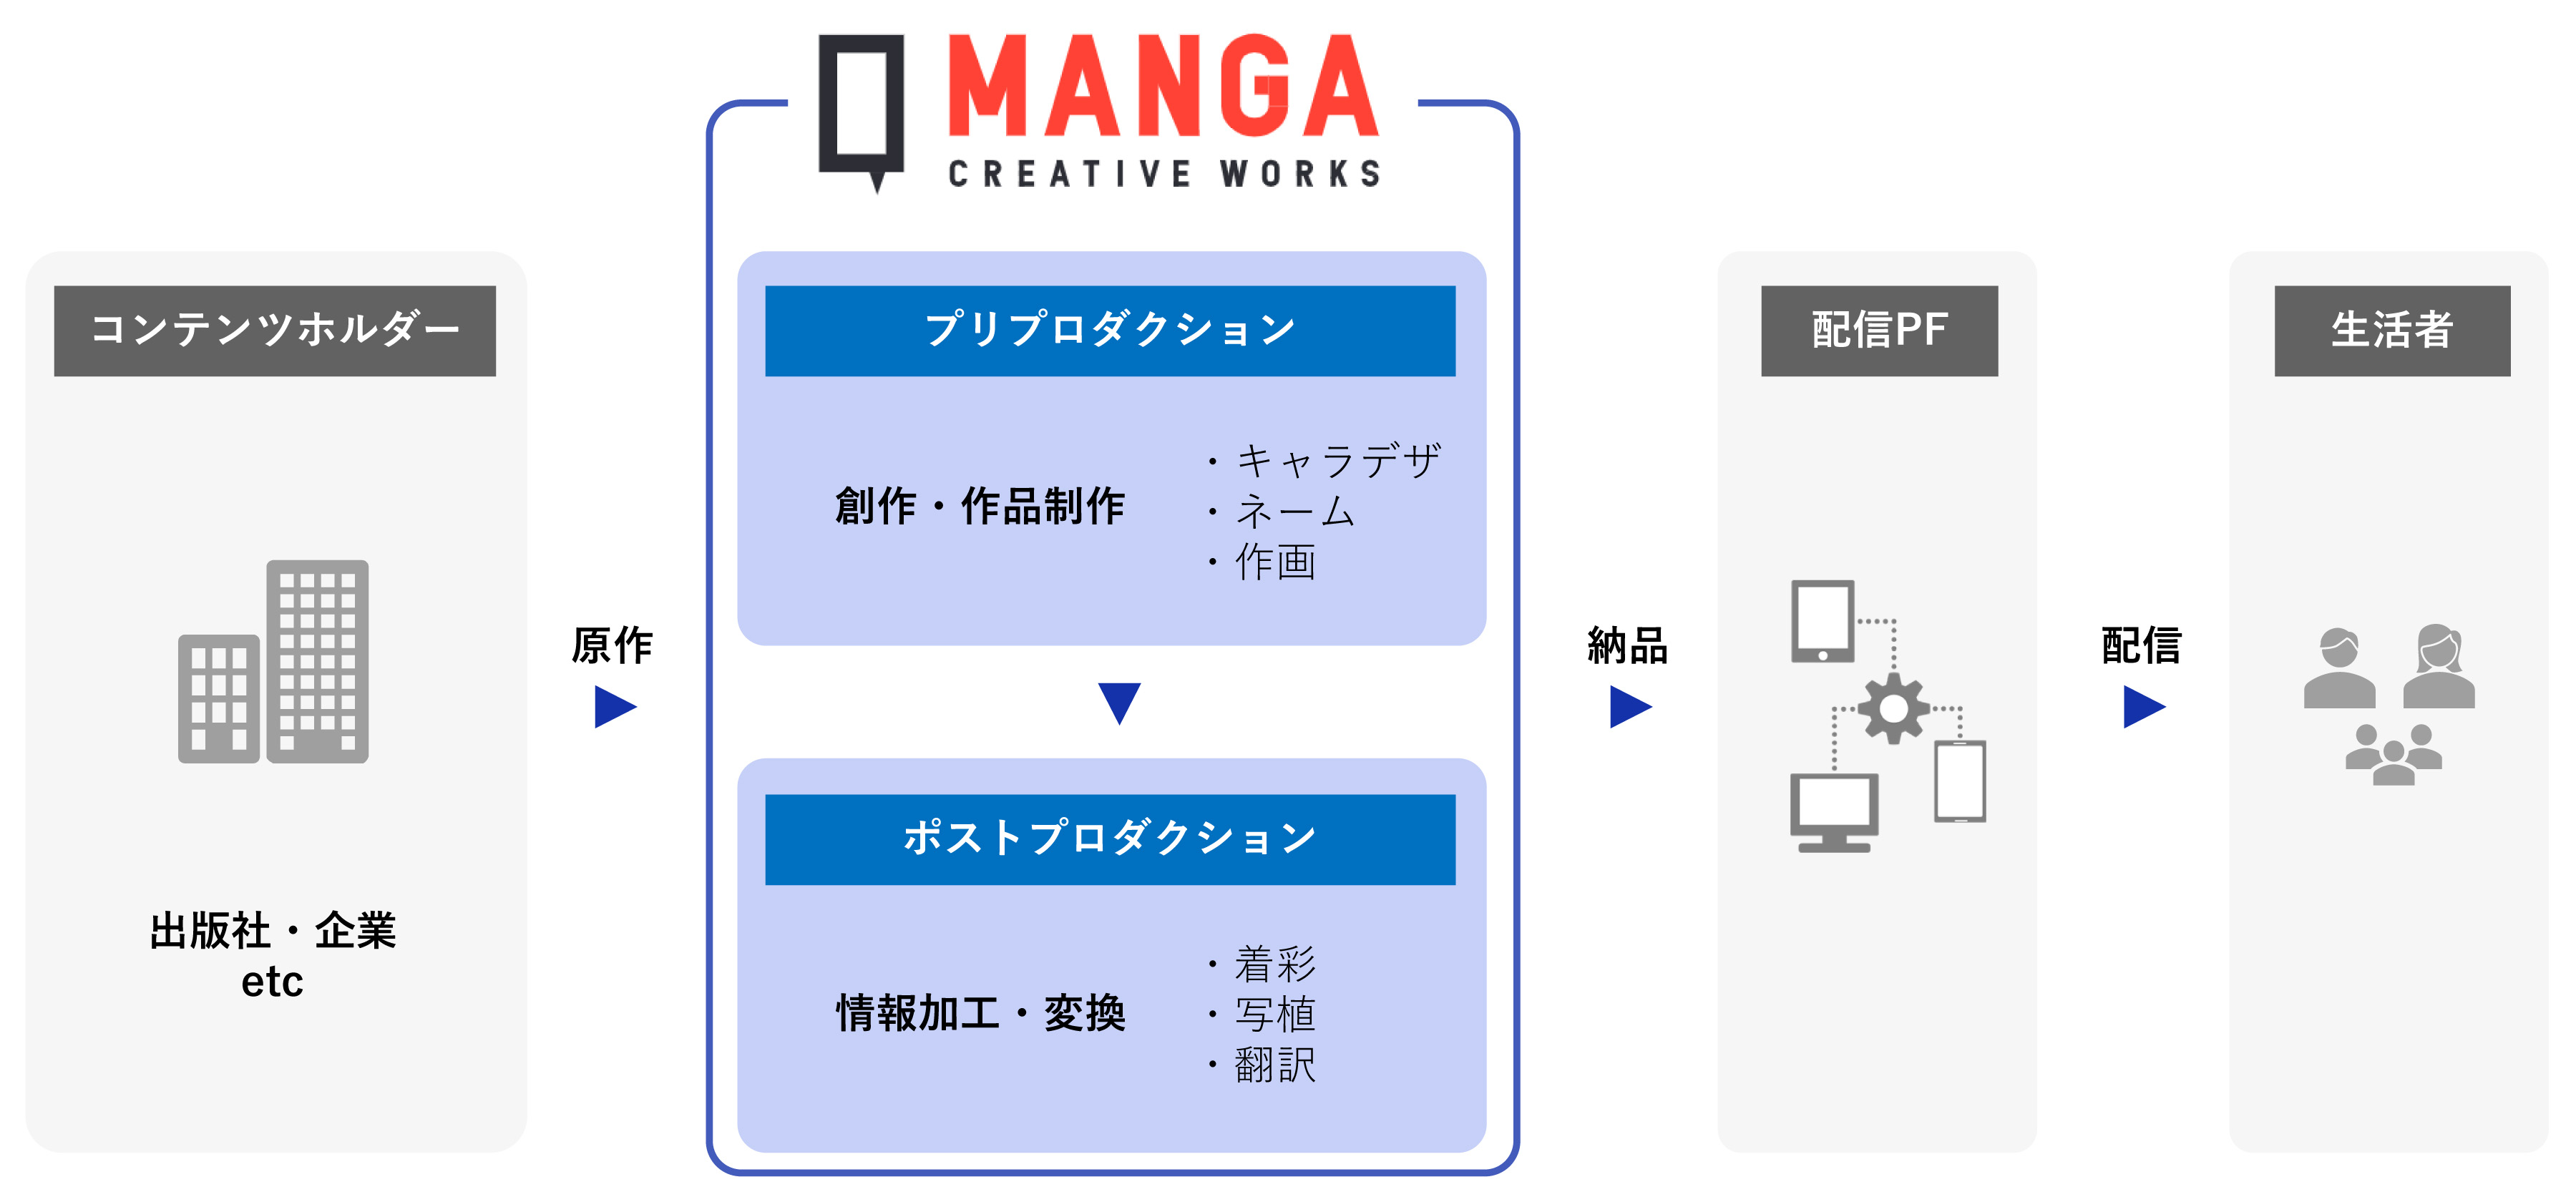 縦スクロールマンガの制作を中心に展開するMANGA CREATIVE WORKSのイメージ図